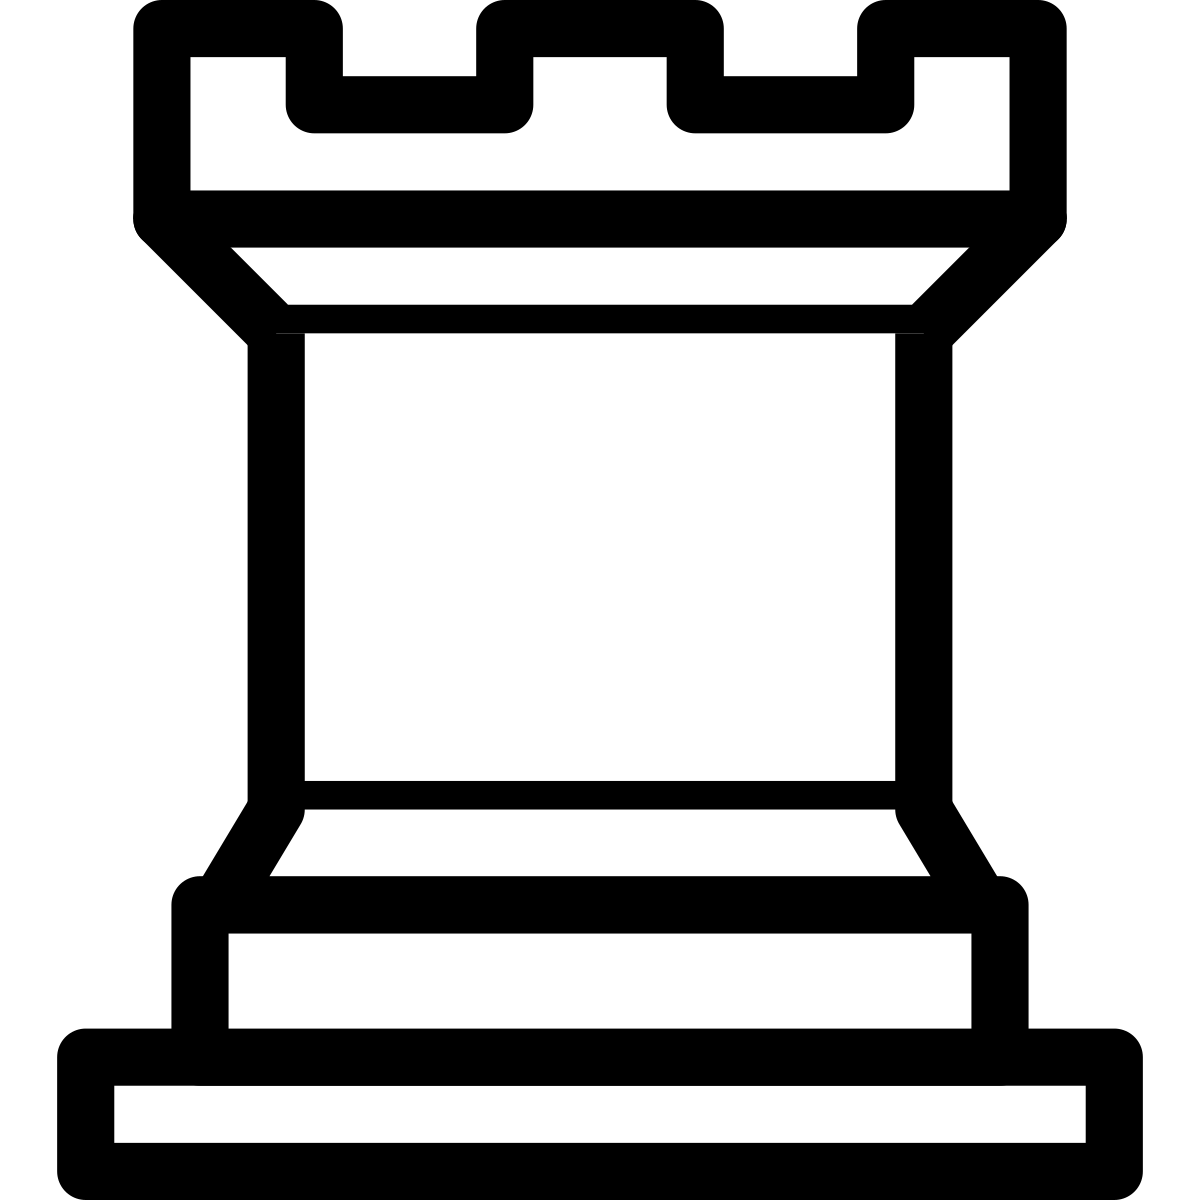 File:Rook (Chess) kopio.jpg - Wikimedia Commons